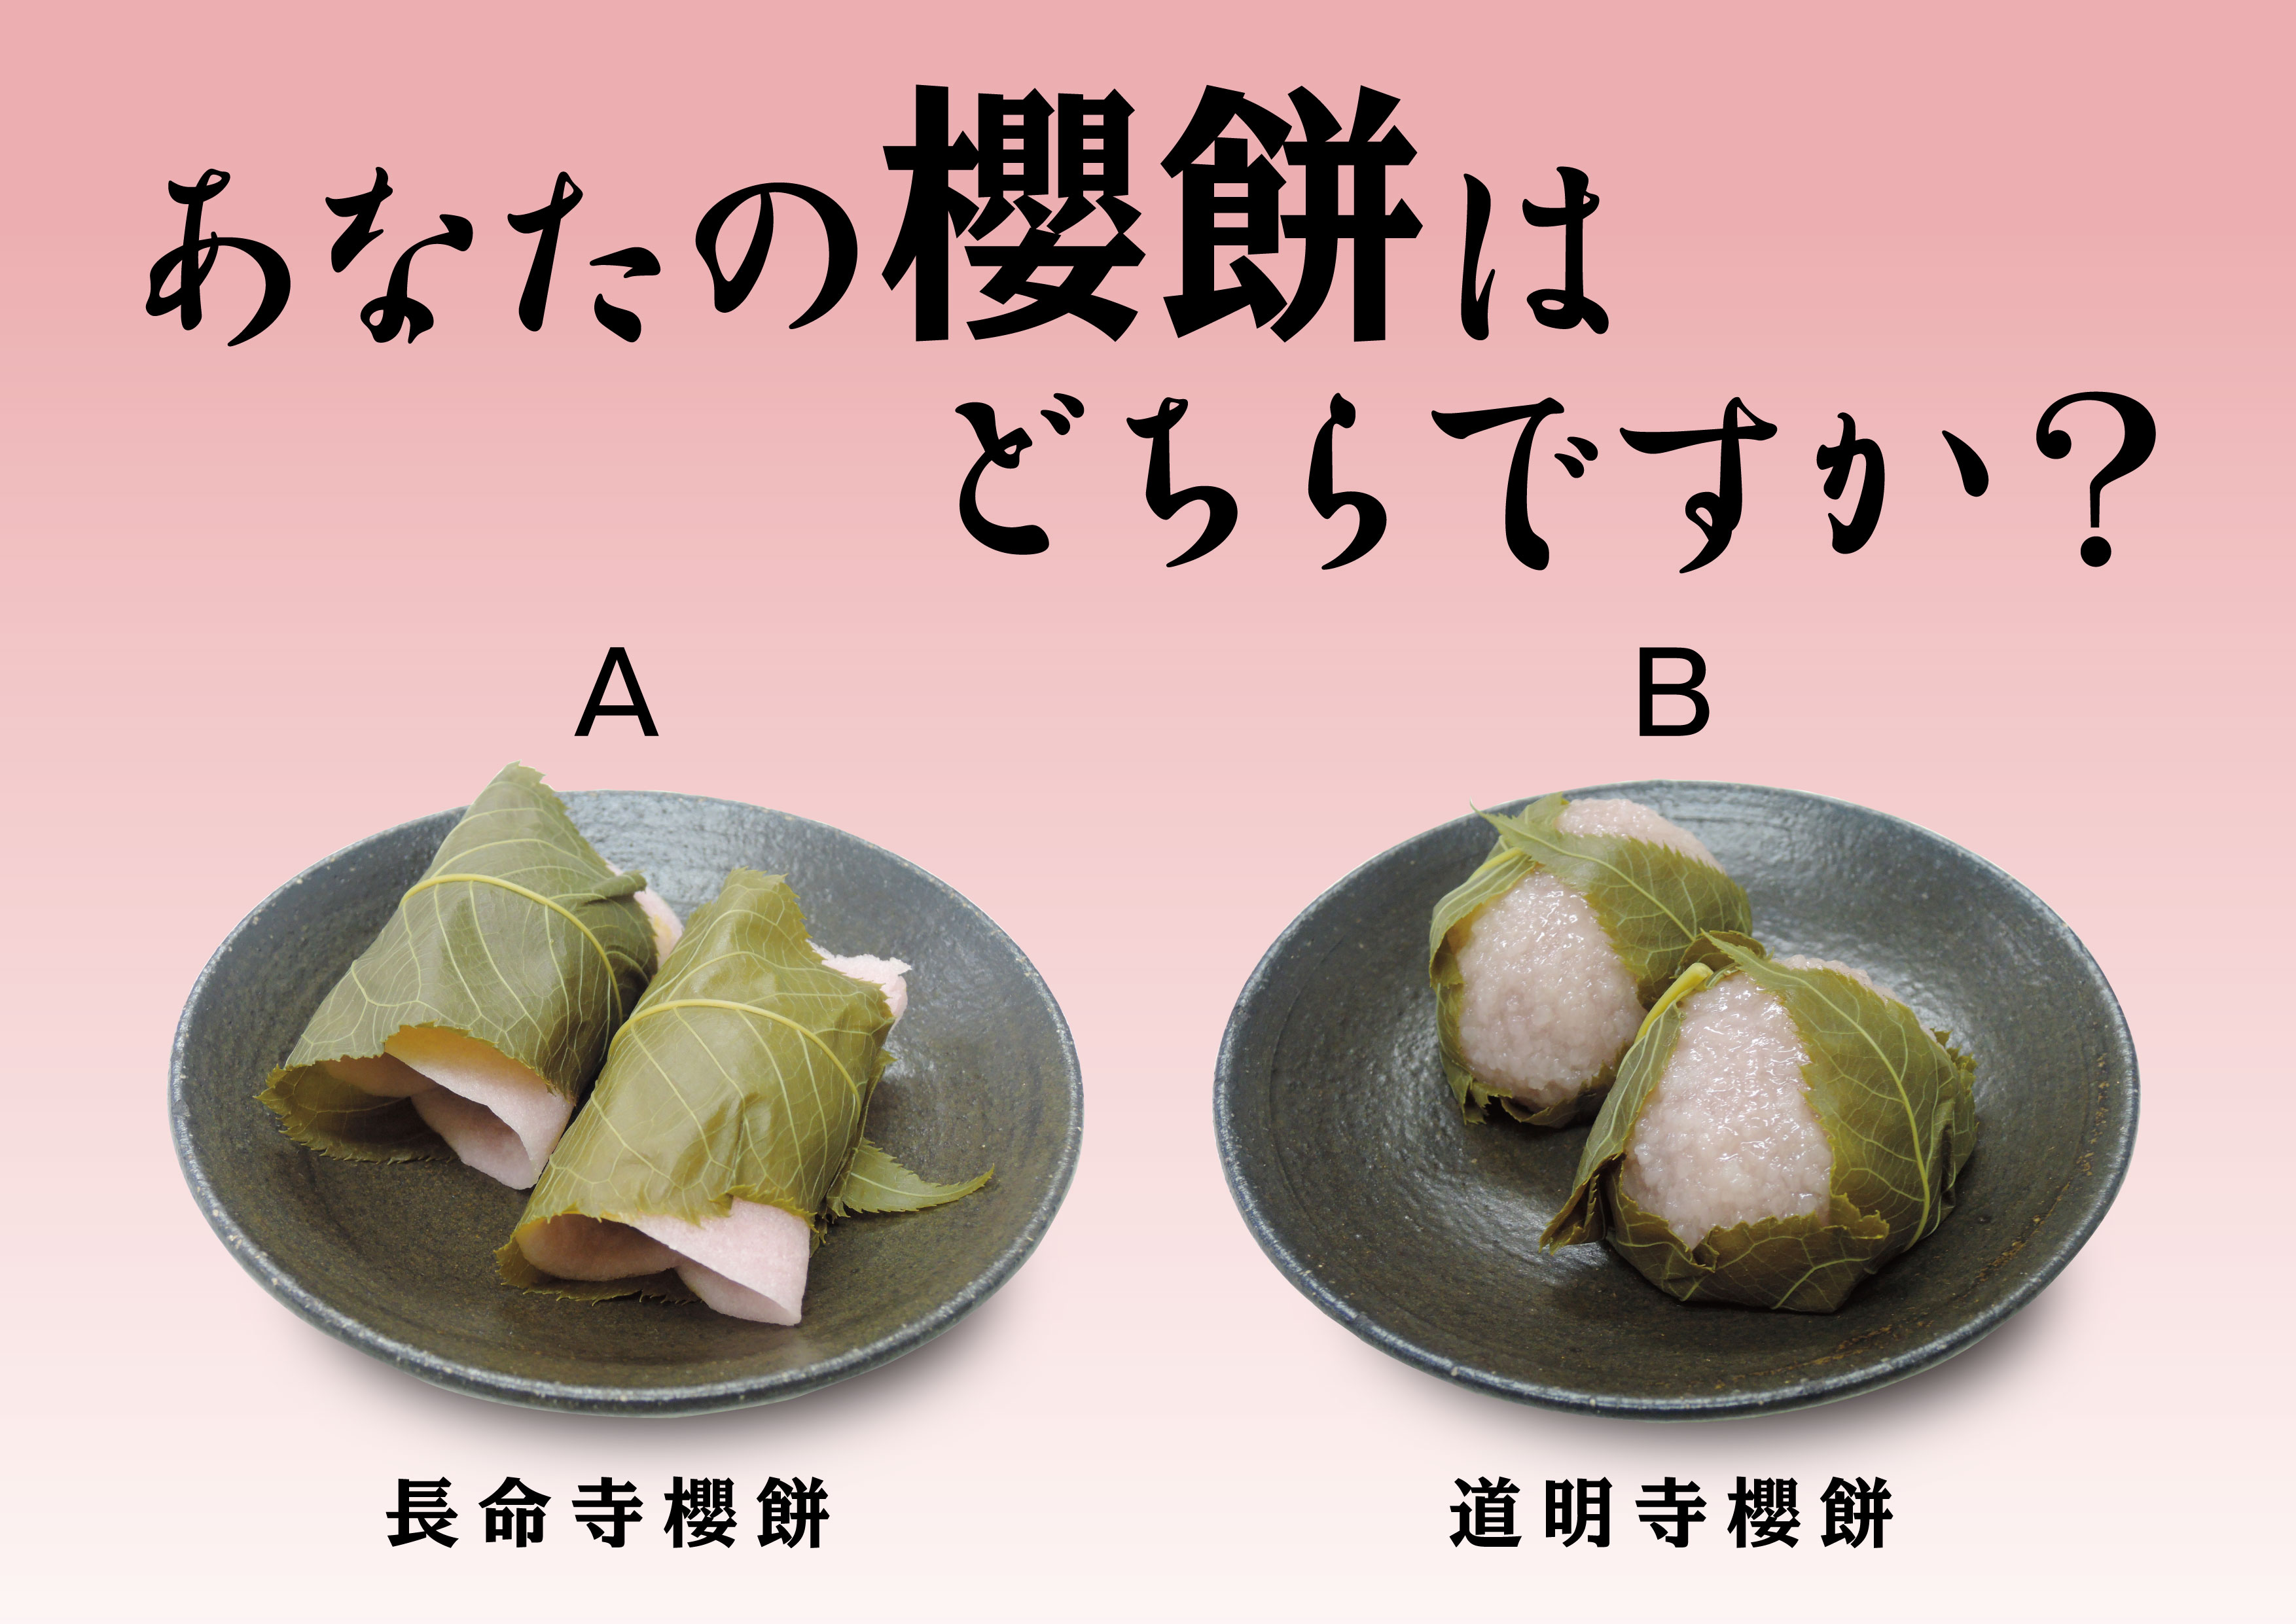 2つの櫻餅